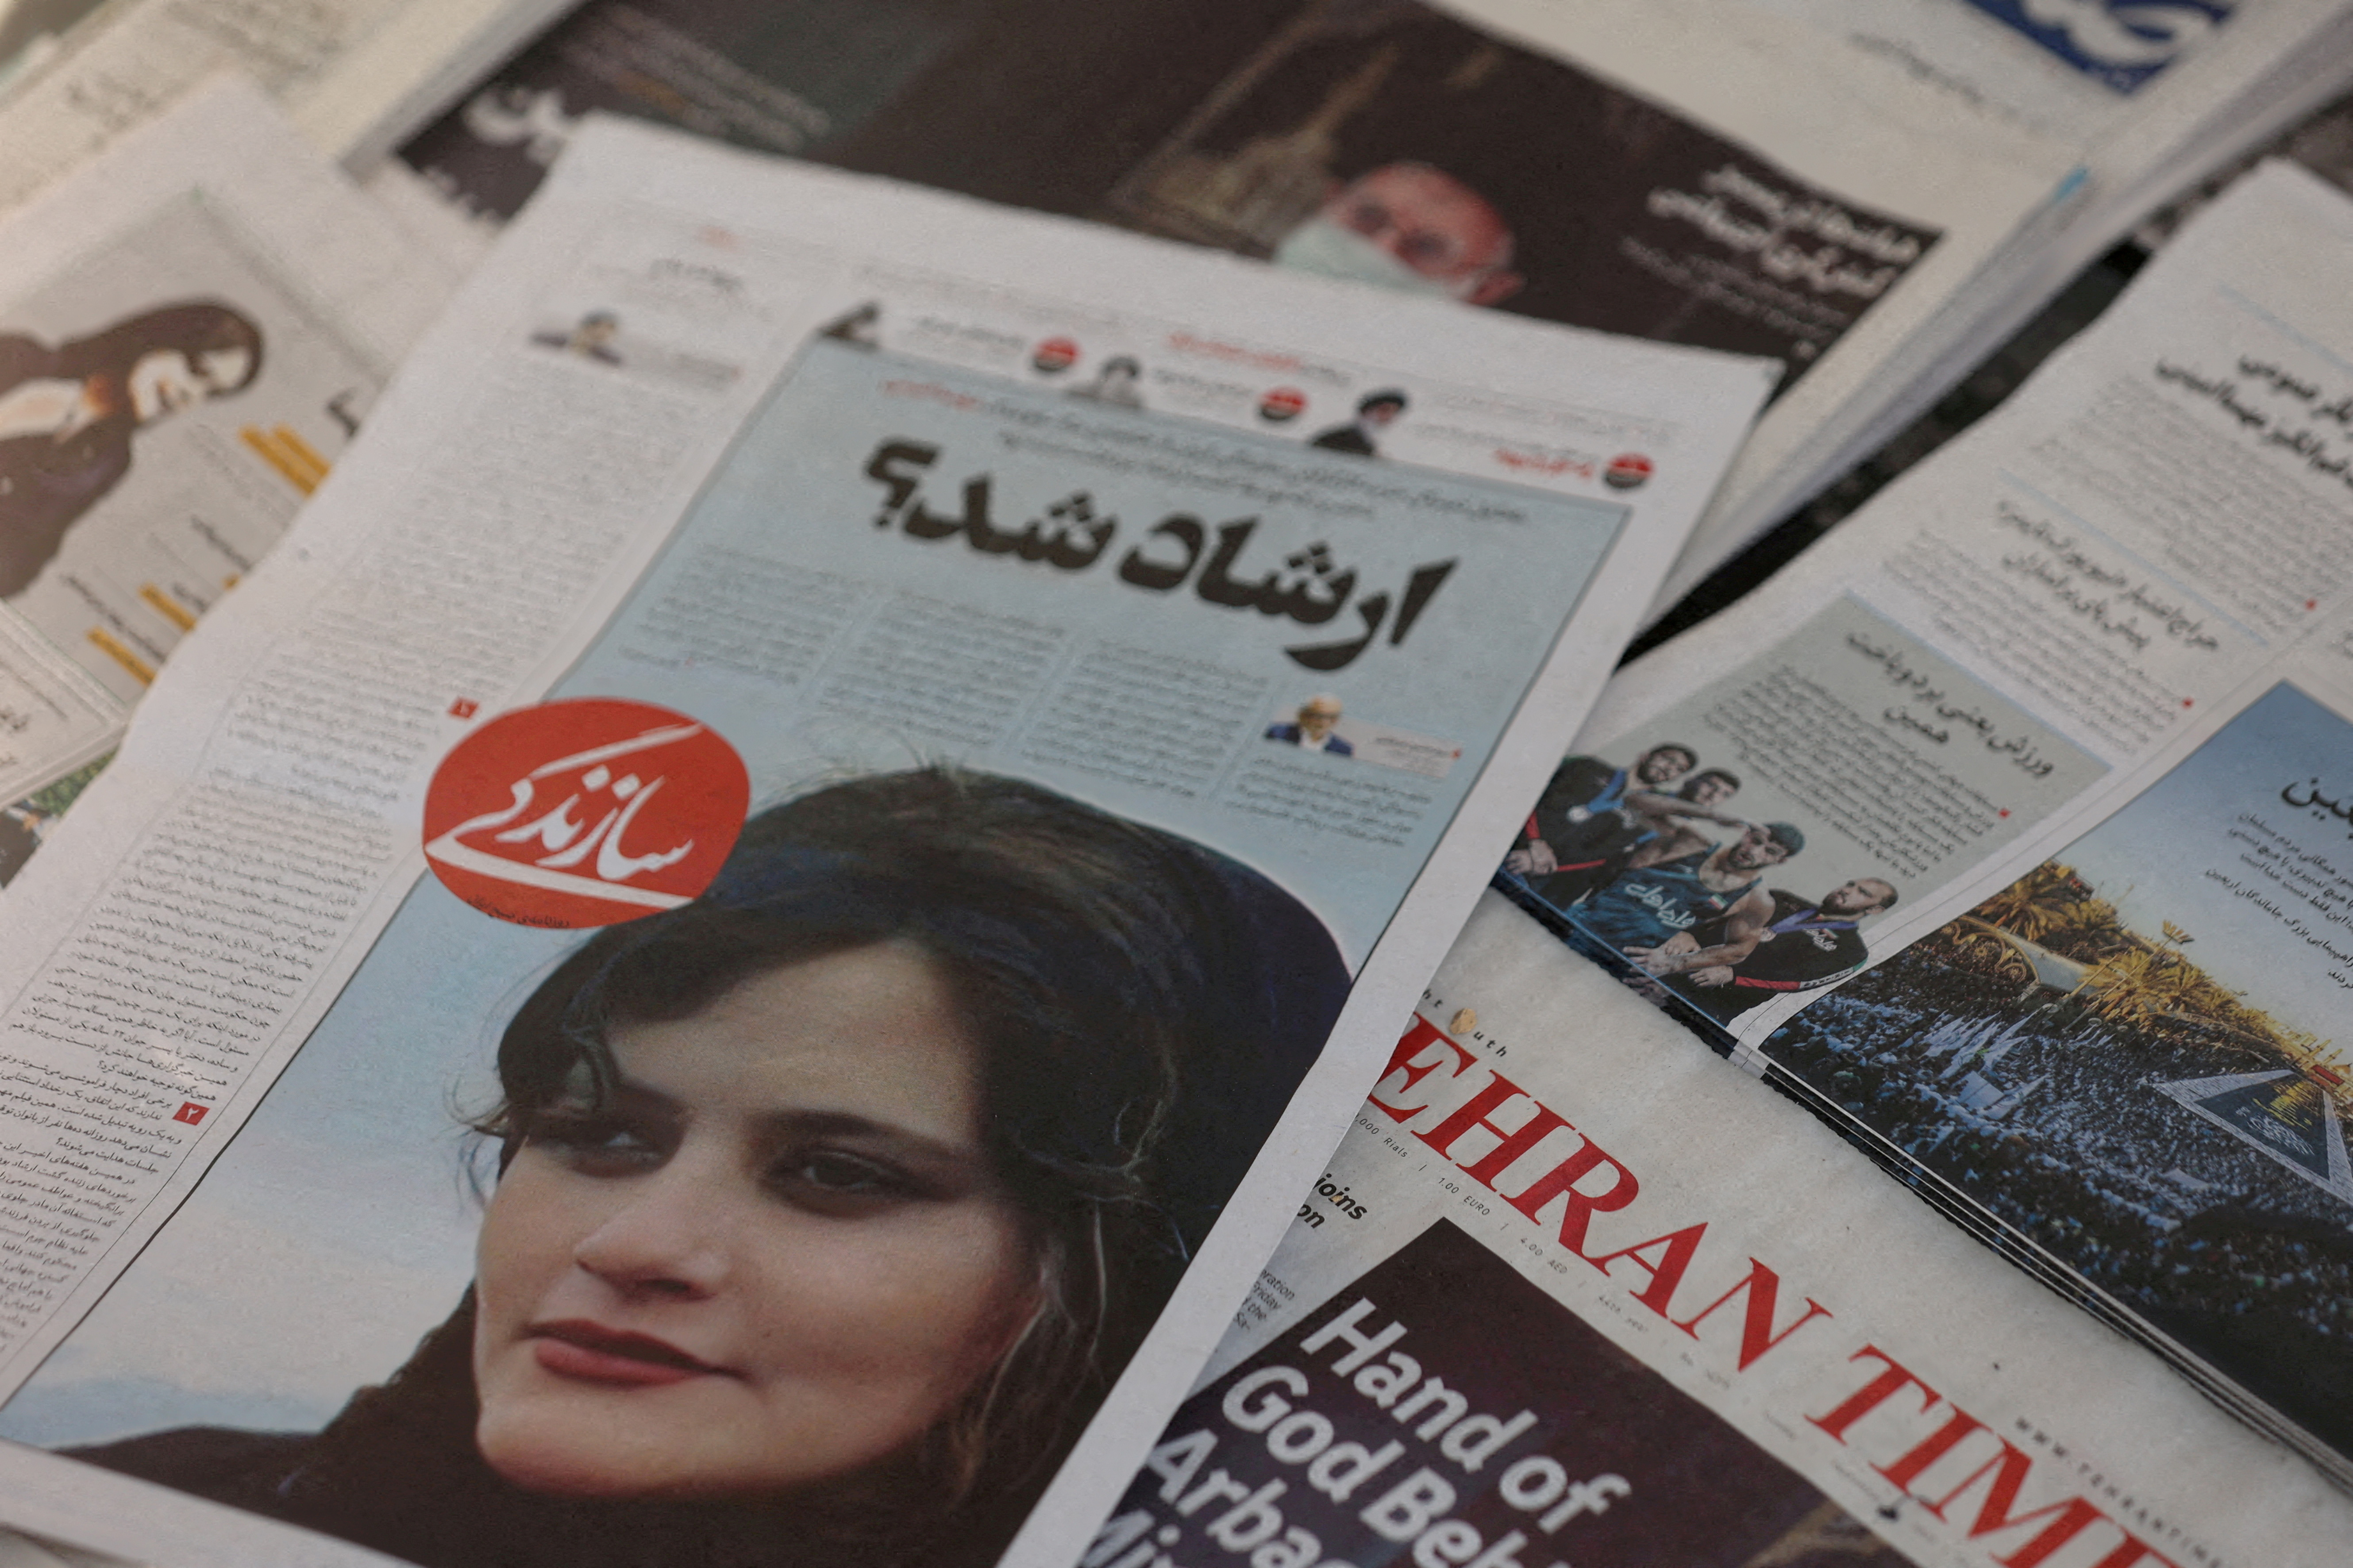 Un periódico con una imagen de portada de Mahsa Amini, una mujer que murió tras ser detenida por la policía de la moral iraní, es visto en Teherán, Irán, el 18 de septiembre de 2022. Majid Asgaripour/WANA (Agencia de Noticias de Asia Occidental) vía REUTERS/File Photo